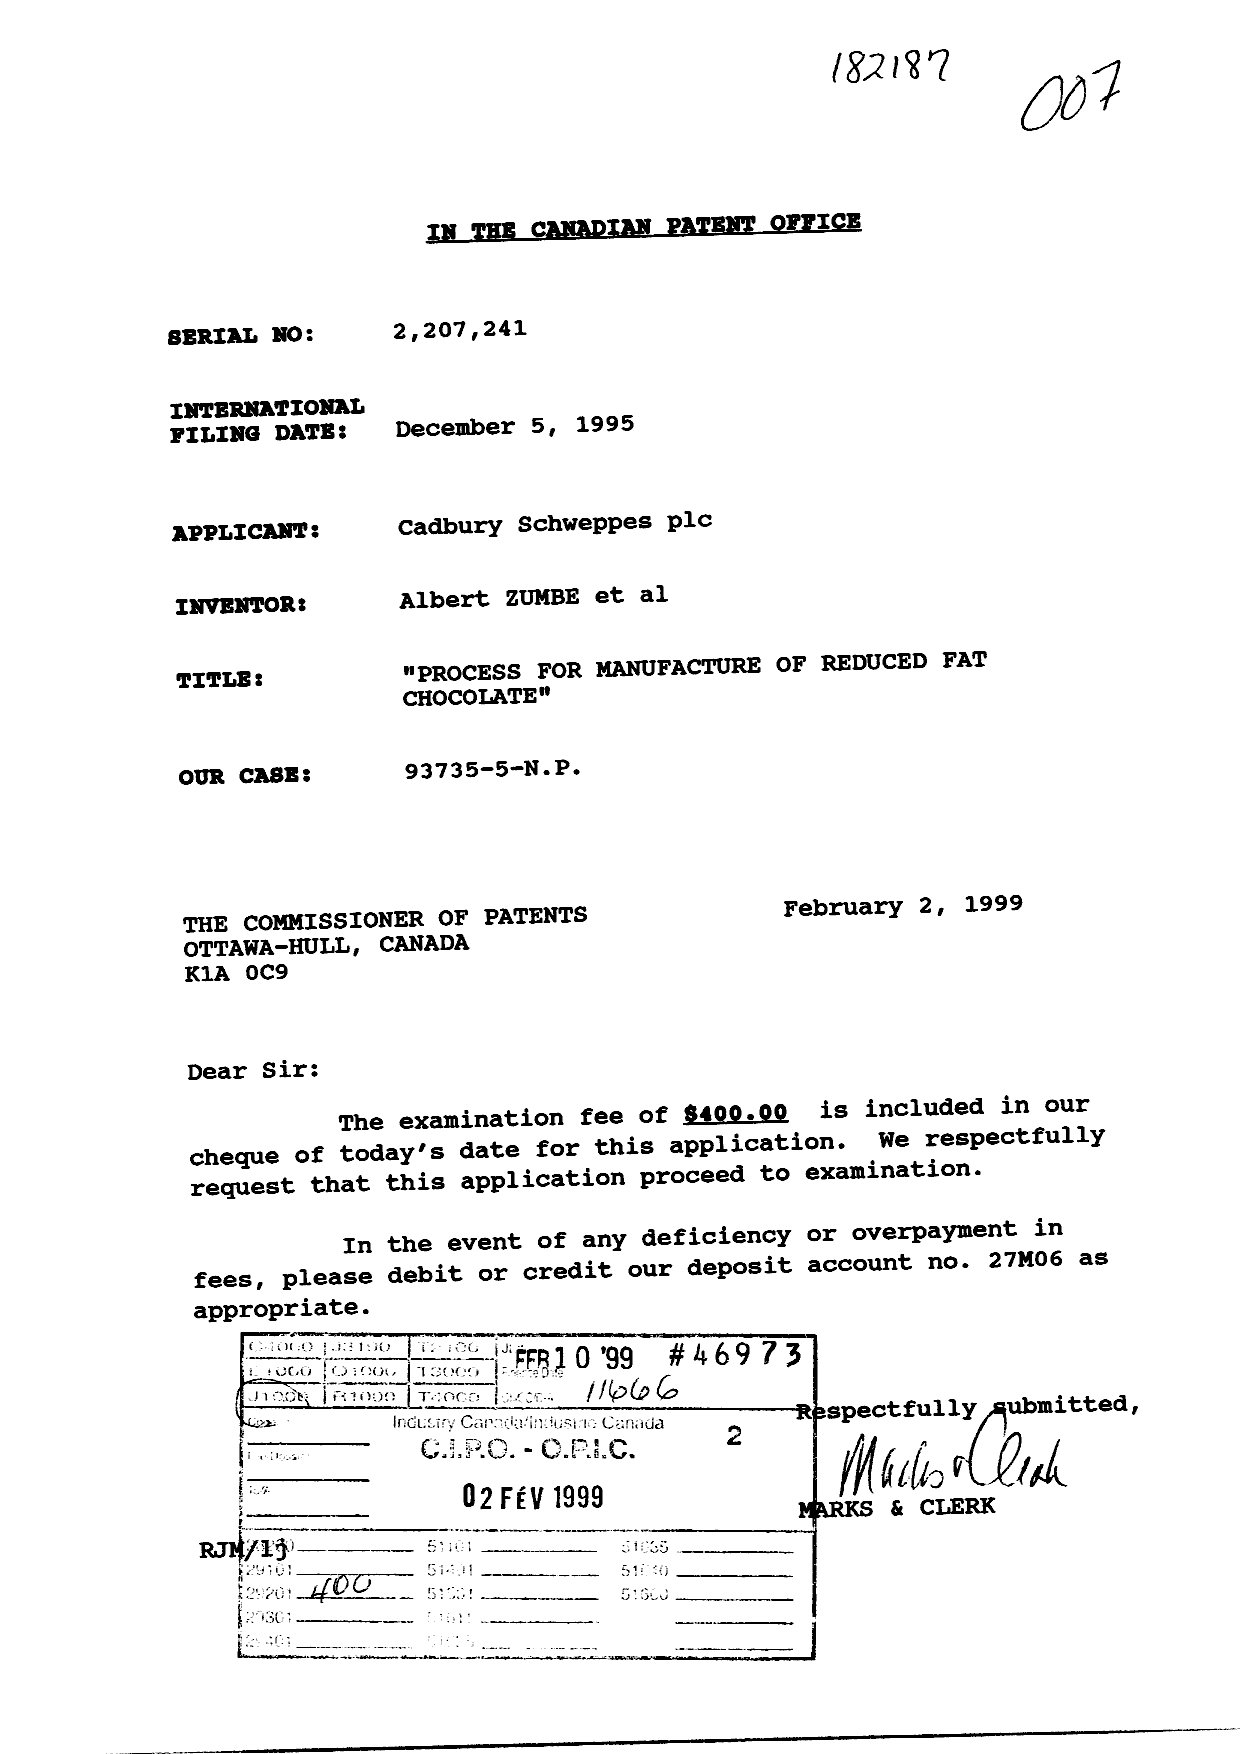 Document de brevet canadien 2207241. Poursuite-Amendment 19990202. Image 1 de 1